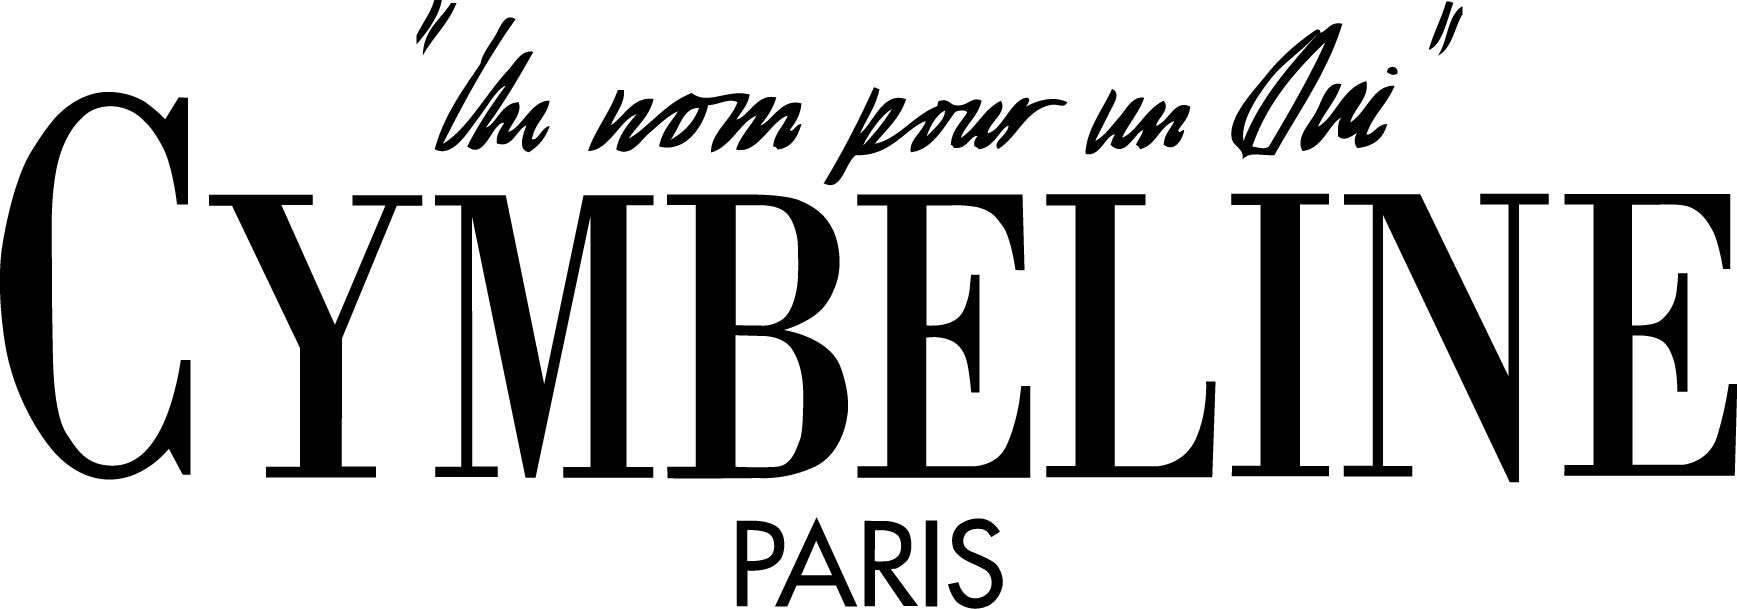 Νυφικά Cymbeline Paris